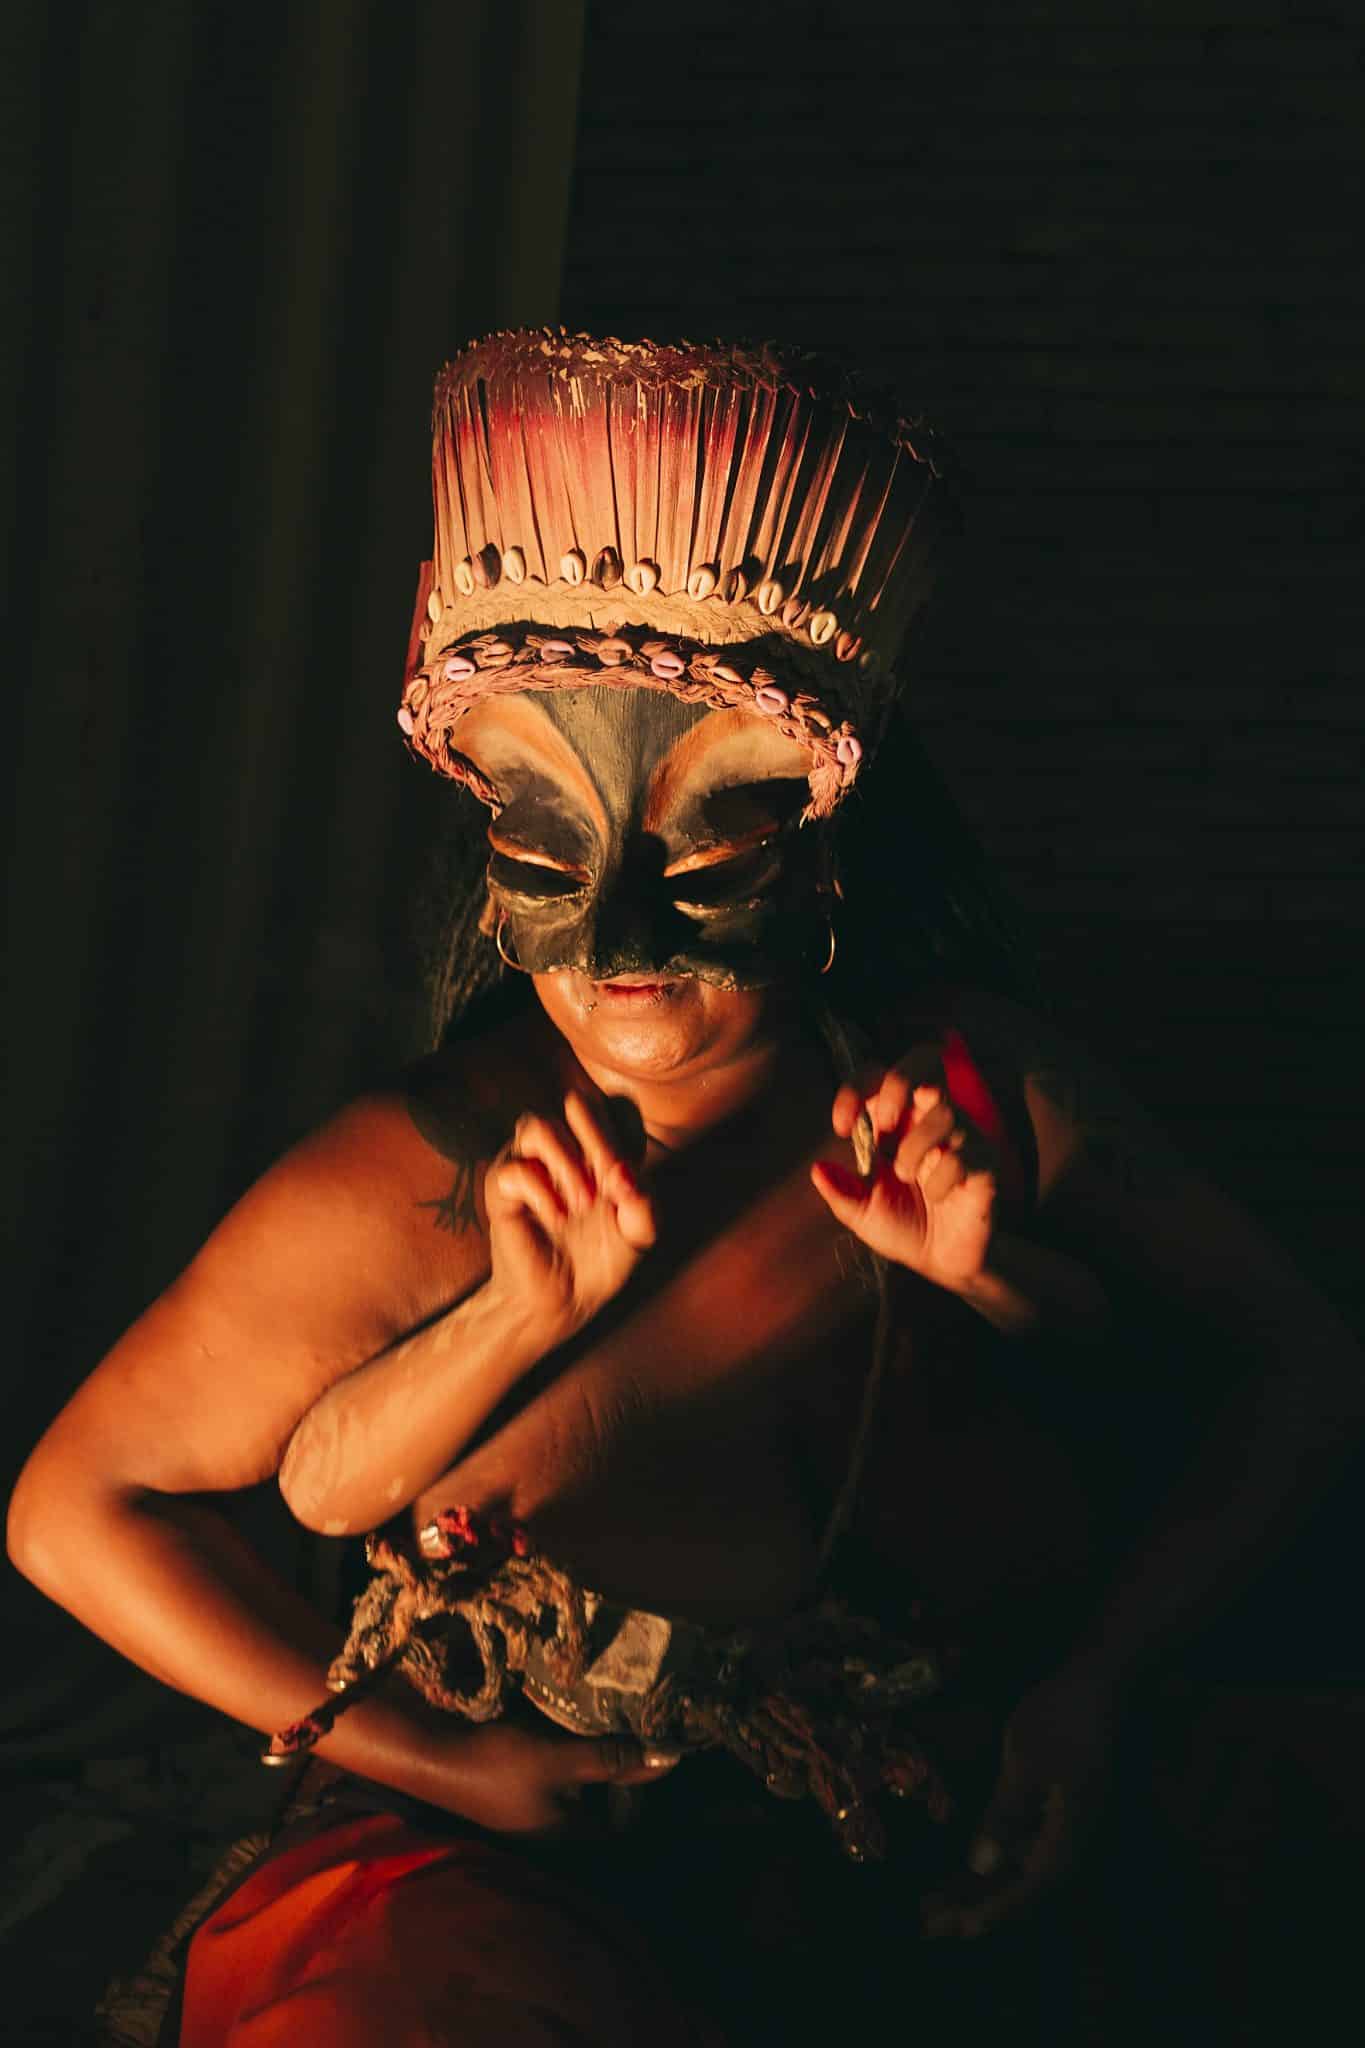 revistaprosaversoearte.com - Cia do Despejo estreia o espetáculo de teatro-dança 'Ireti', inspirado na mitologia Iorubá